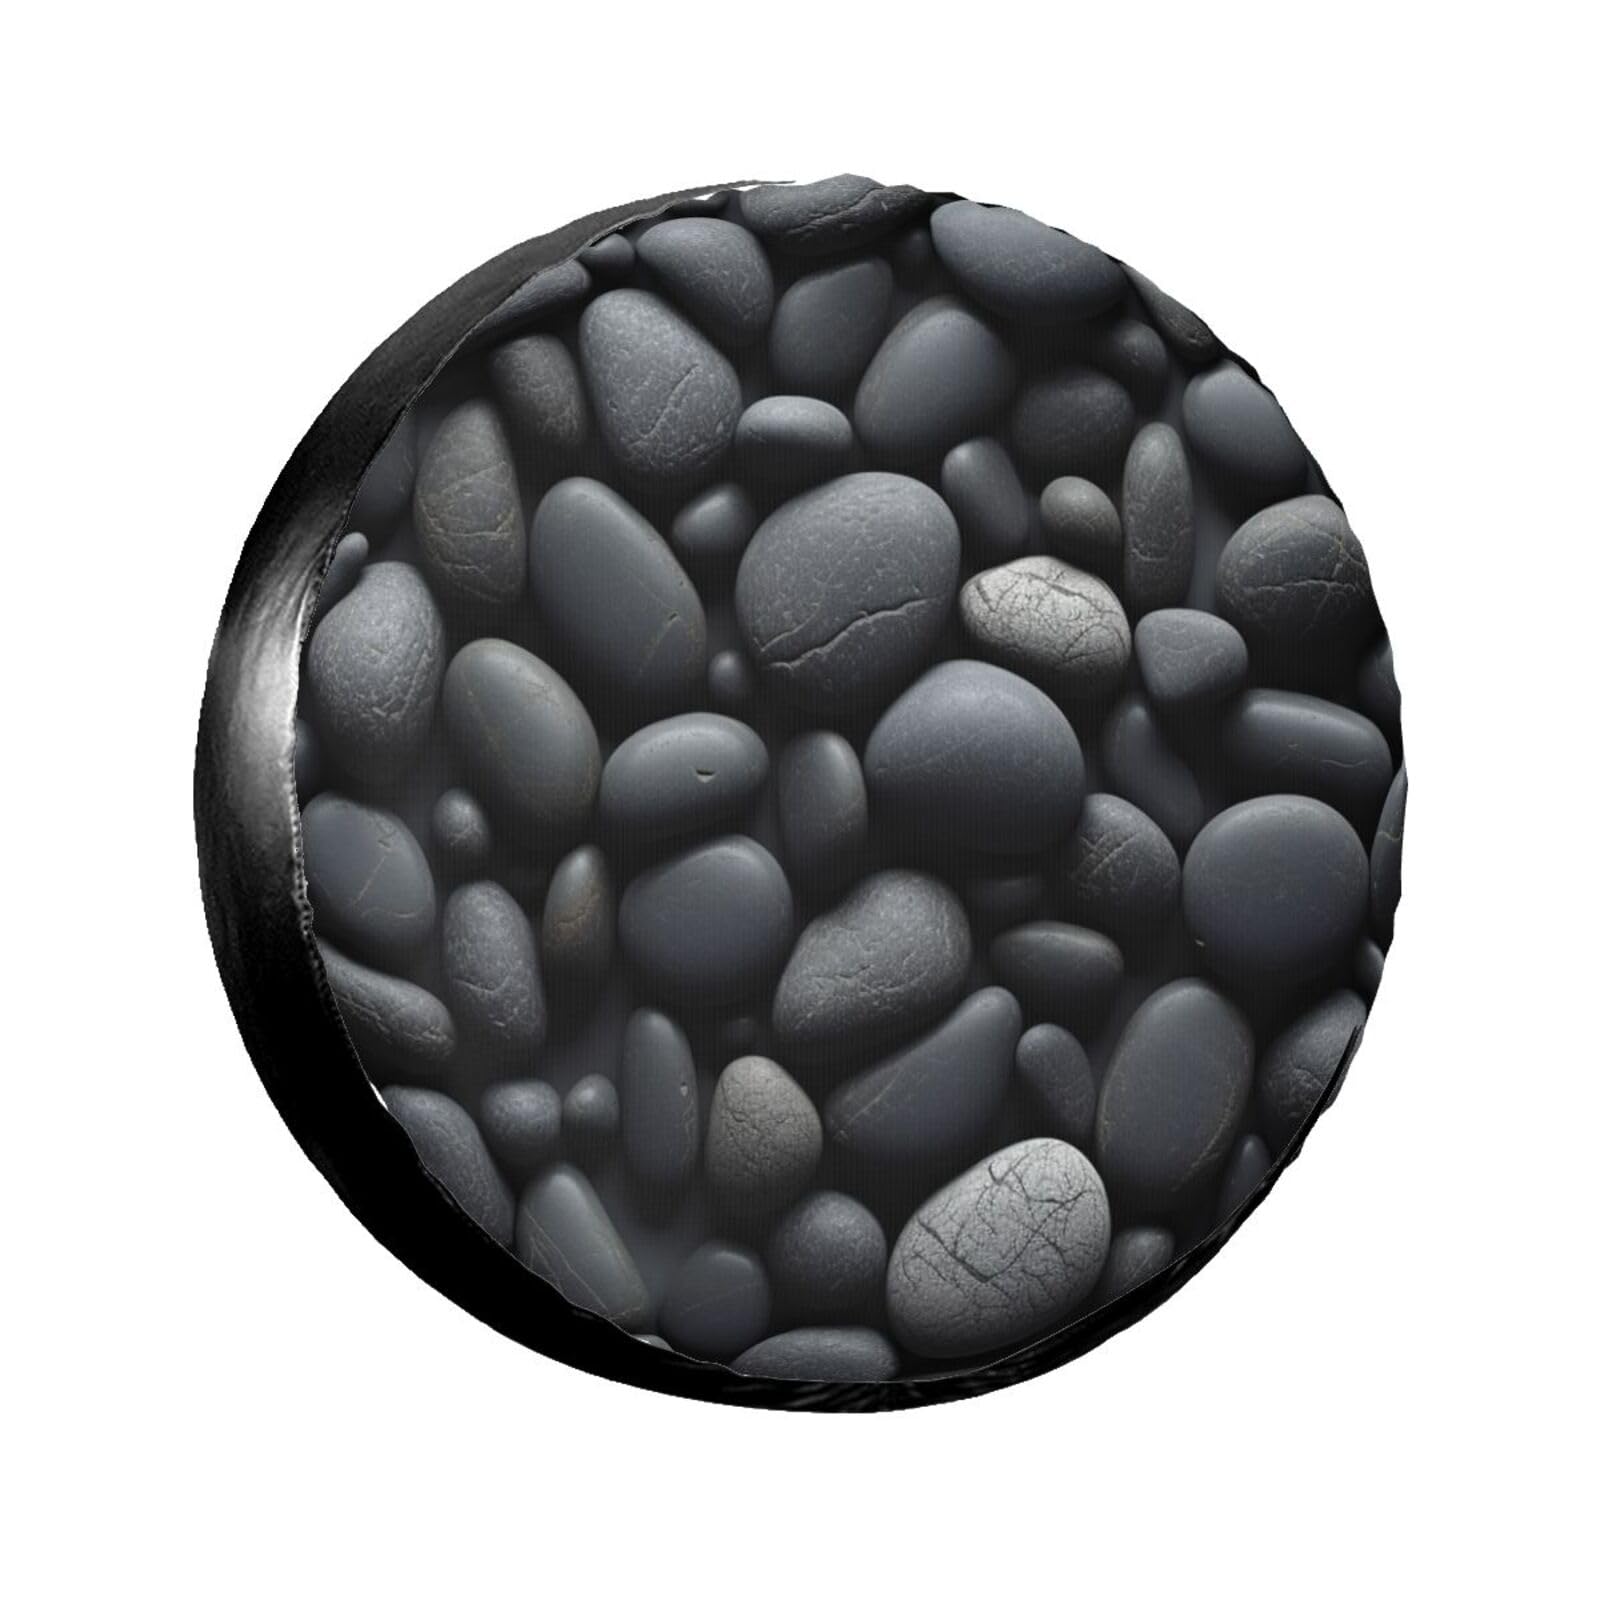 Many Black Pebbles Reifenabdeckung, wasserdicht, staubdicht, sonnenfest, Ersatzradabdeckung, geeignet für Anhänger, SUV, LKW usw. 35,6 cm (14 Zoll) von MMSJSBVY